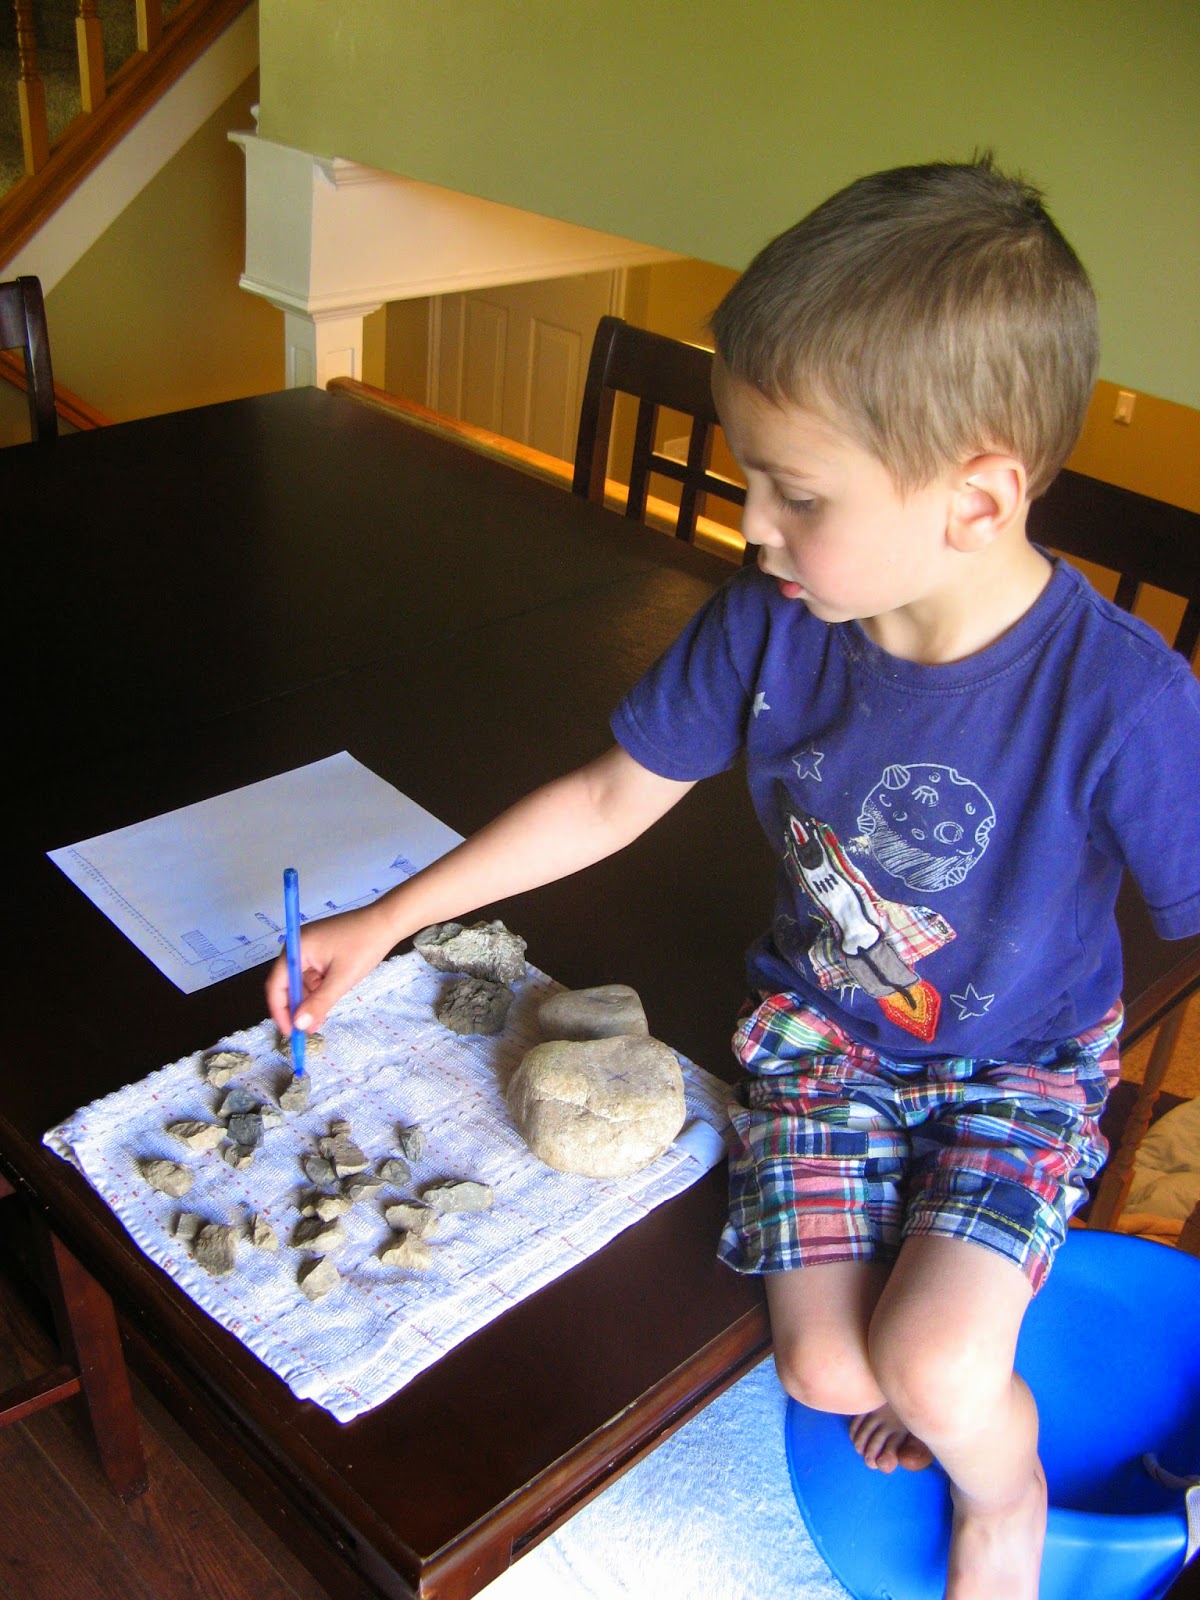 10 At-Home Science Activities for Preschoolers - Davis ...